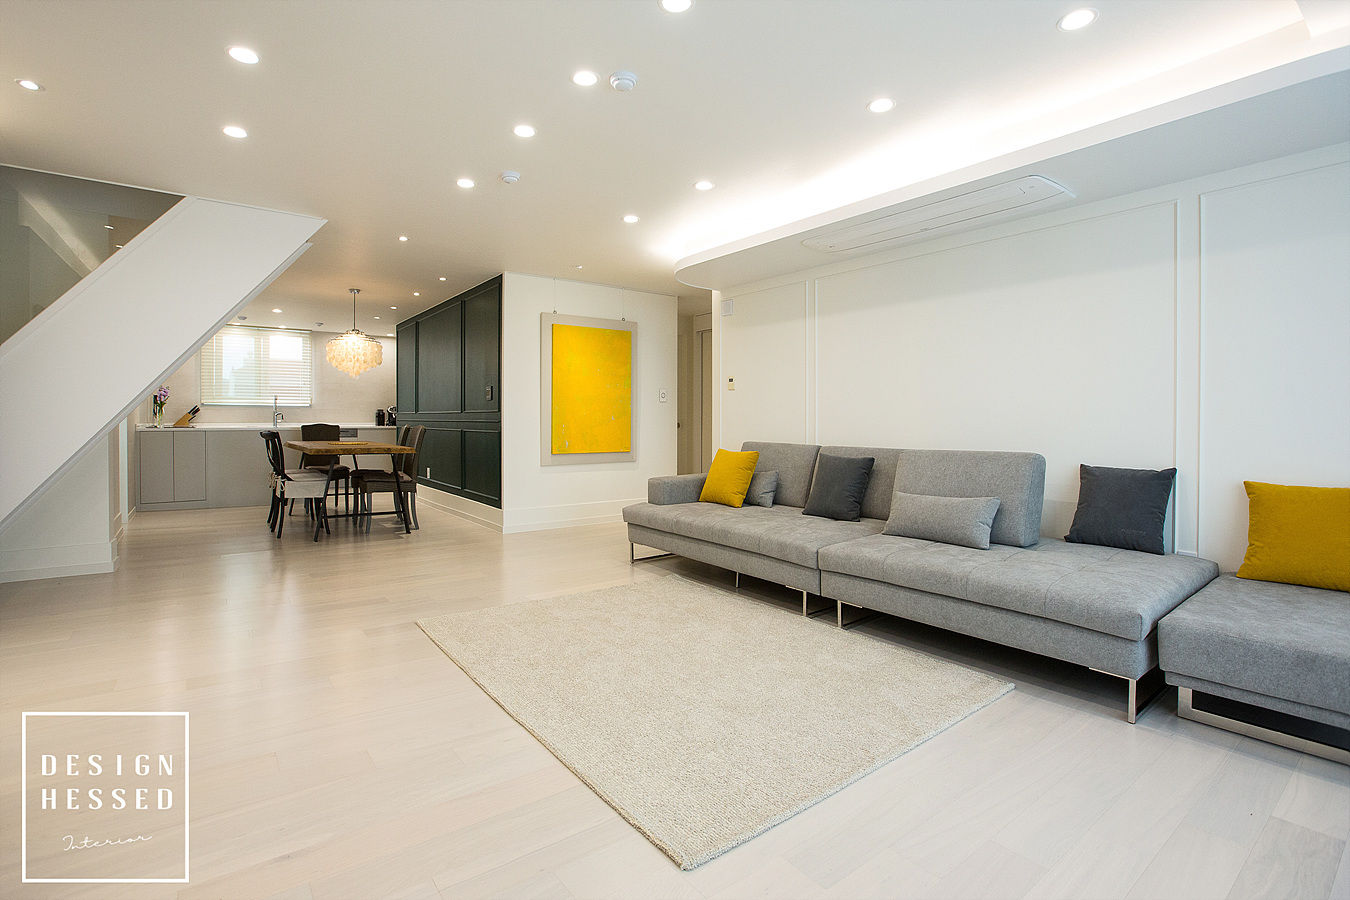 대전 어은동 한빛아파트 51평-거실, 주방, 디자인 헤세드 디자인 헤세드 Salon moderne